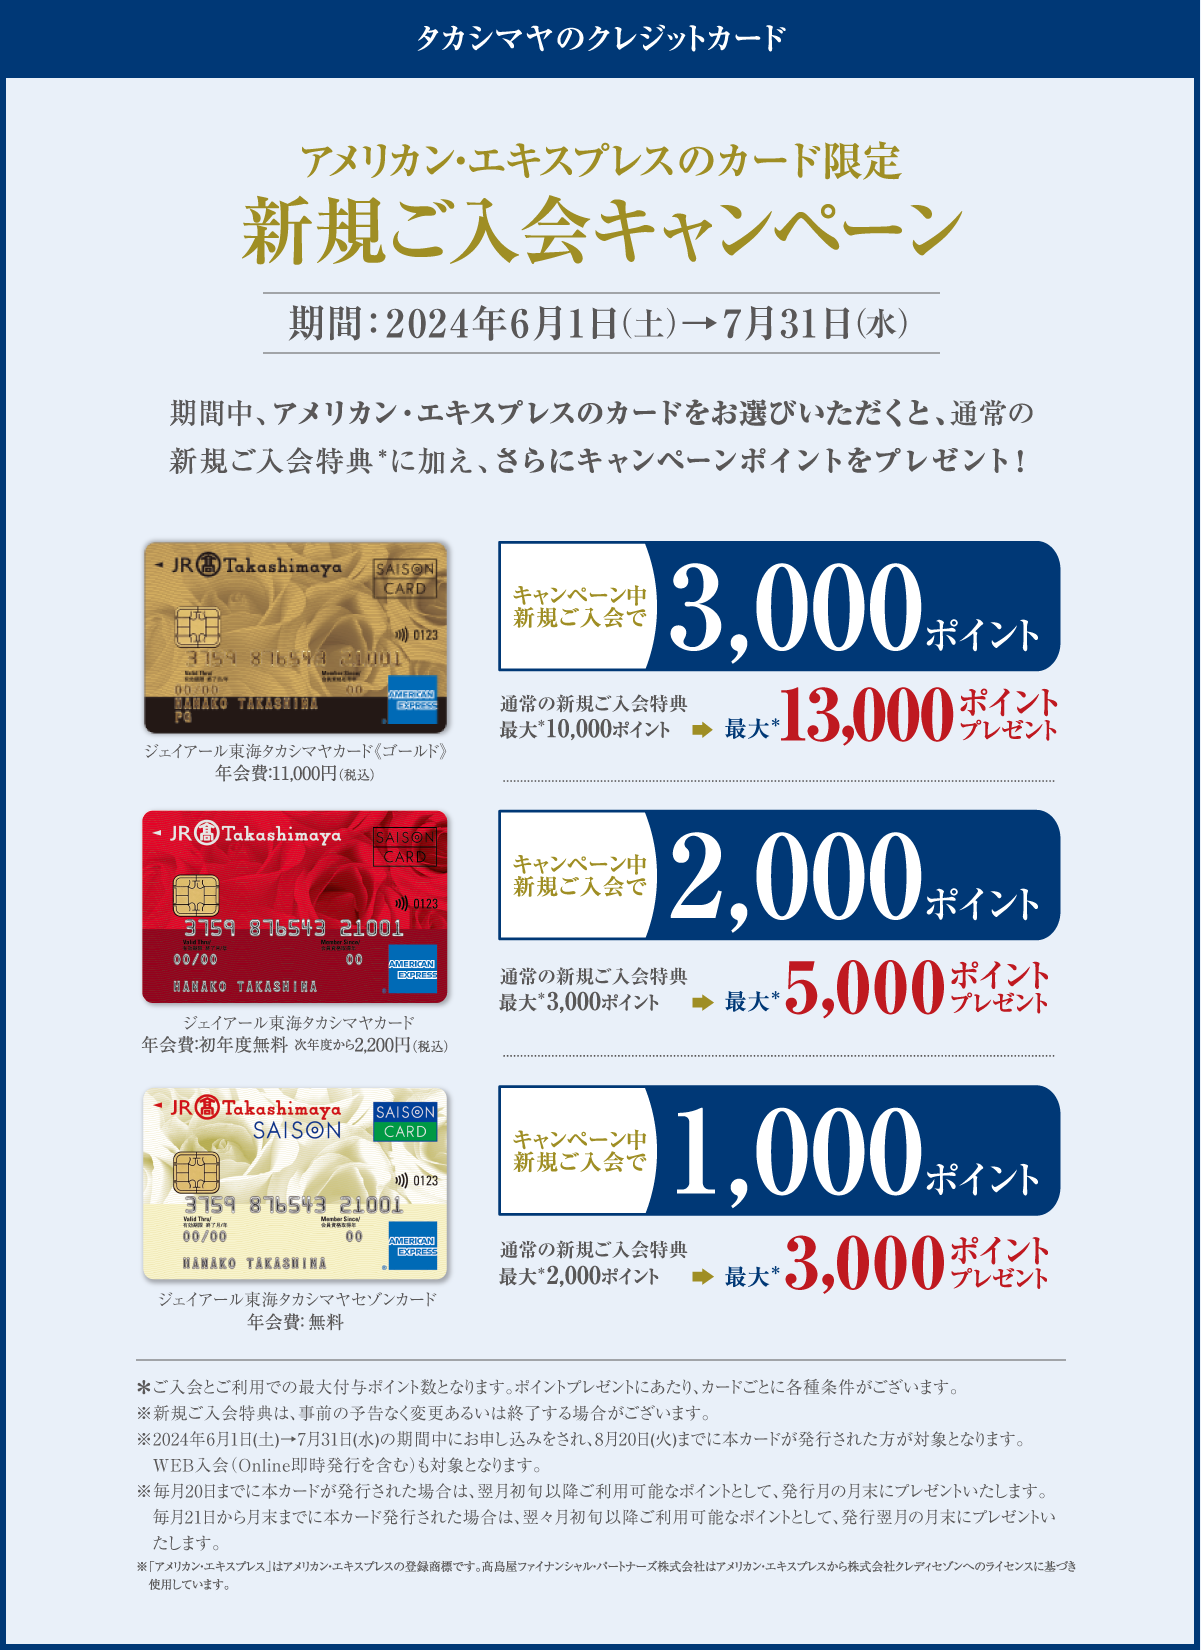 タカシマヤのクレジットカード アメリカン・エキスプレスのカード限定 新規ご入会キャンペーン 期間:2024年6月1日（土）→7月31日（水）